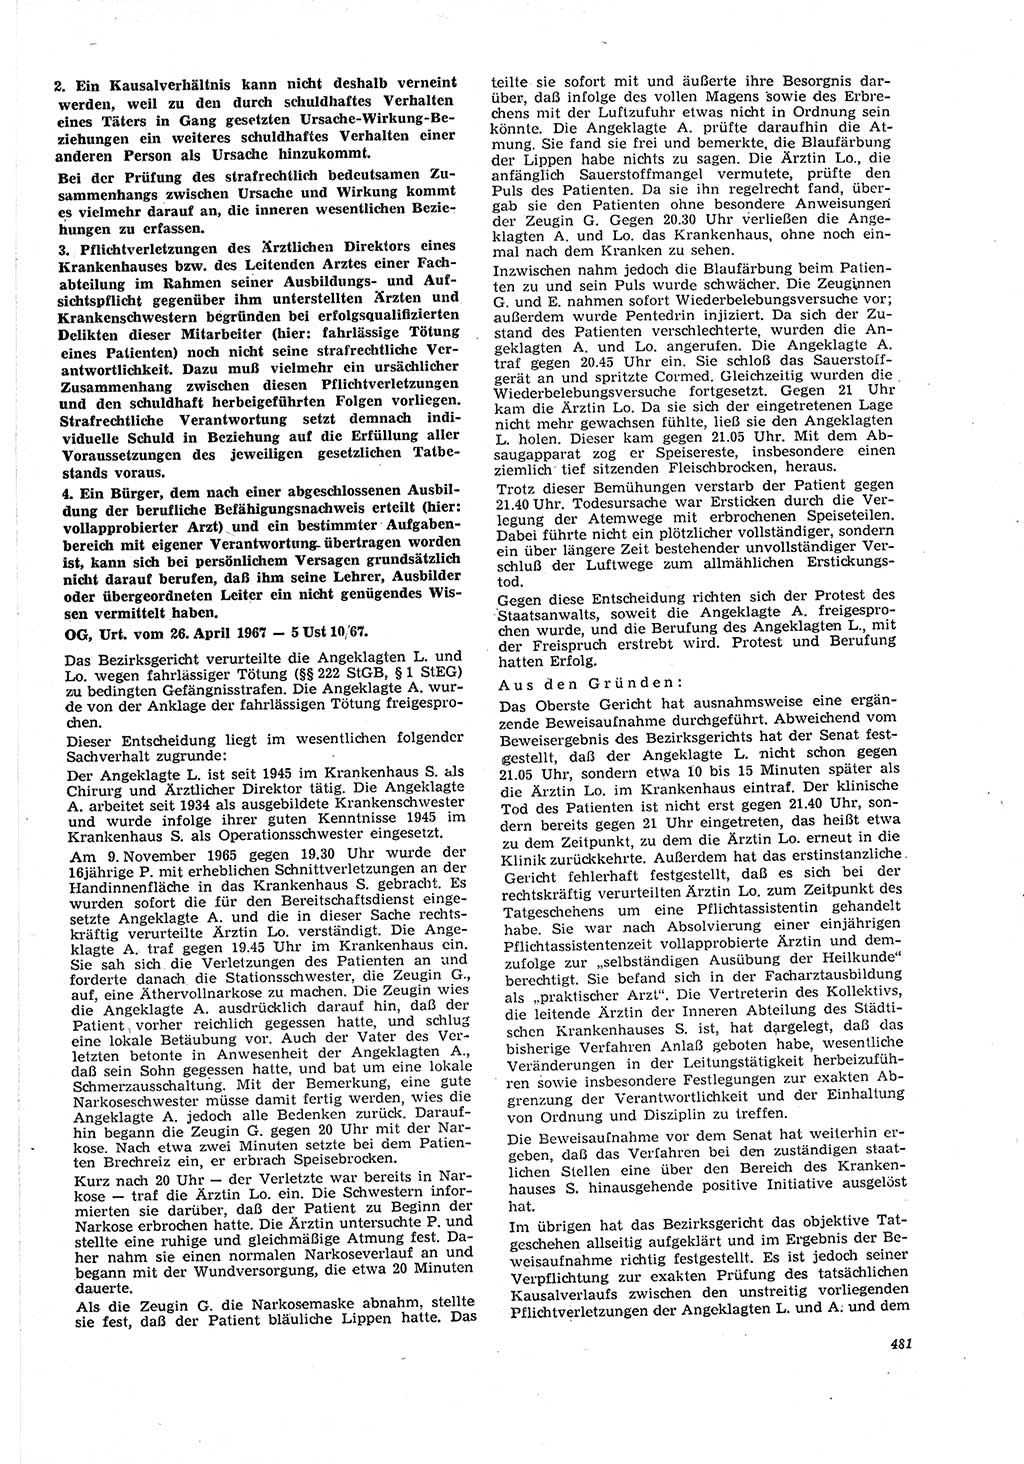 Neue Justiz (NJ), Zeitschrift für Recht und Rechtswissenschaft [Deutsche Demokratische Republik (DDR)], 21. Jahrgang 1967, Seite 481 (NJ DDR 1967, S. 481)